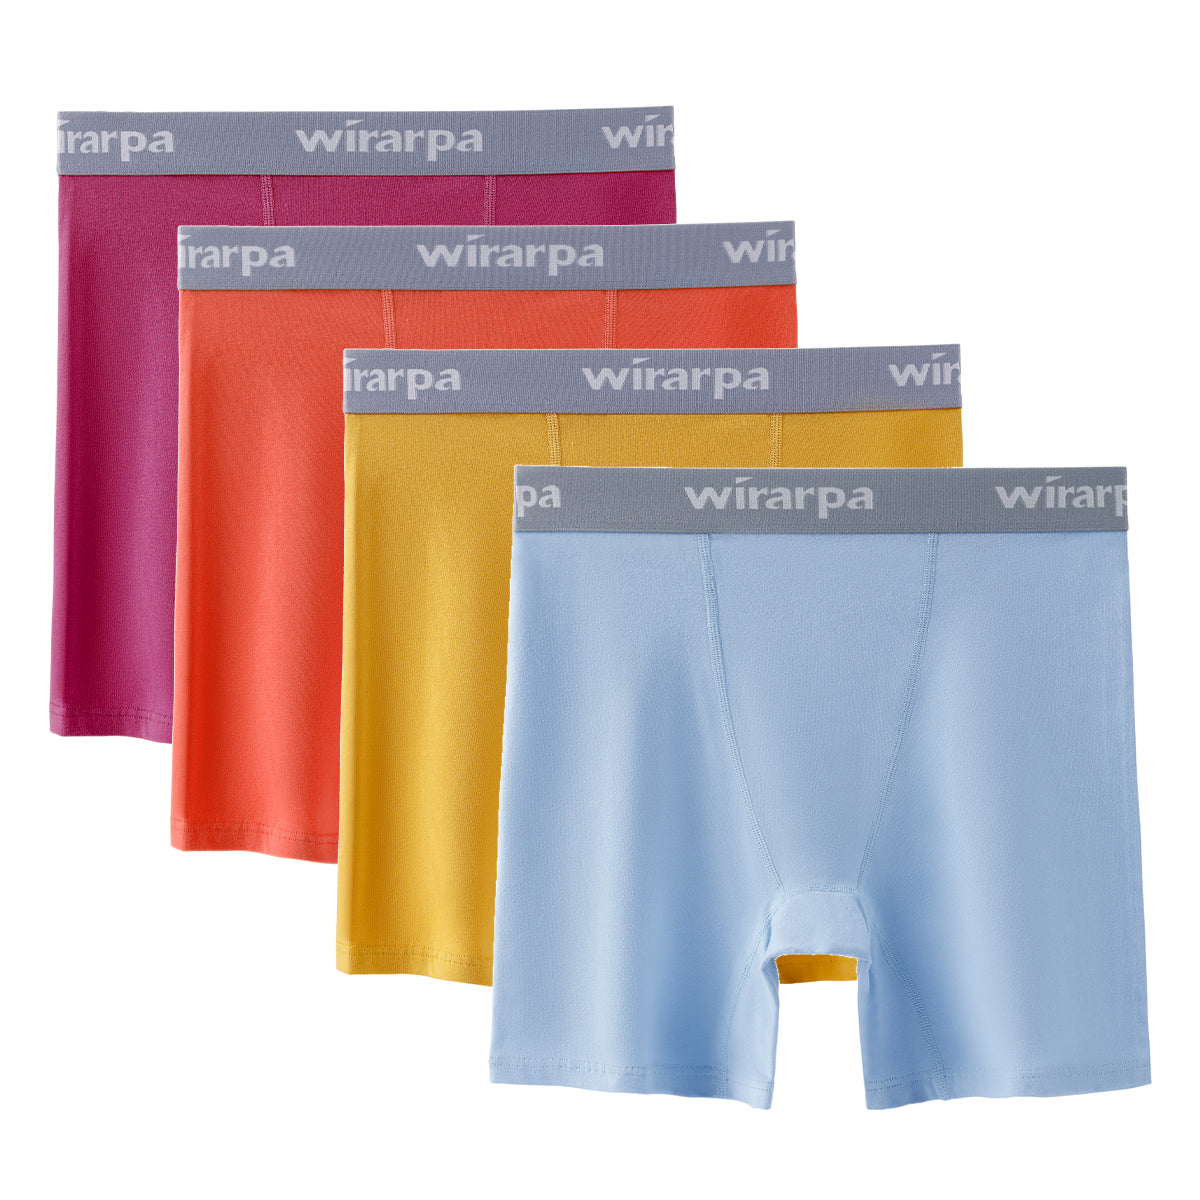 wirarpa Women's Cotton Boy Shorts Underwear Anti Chafing Soft